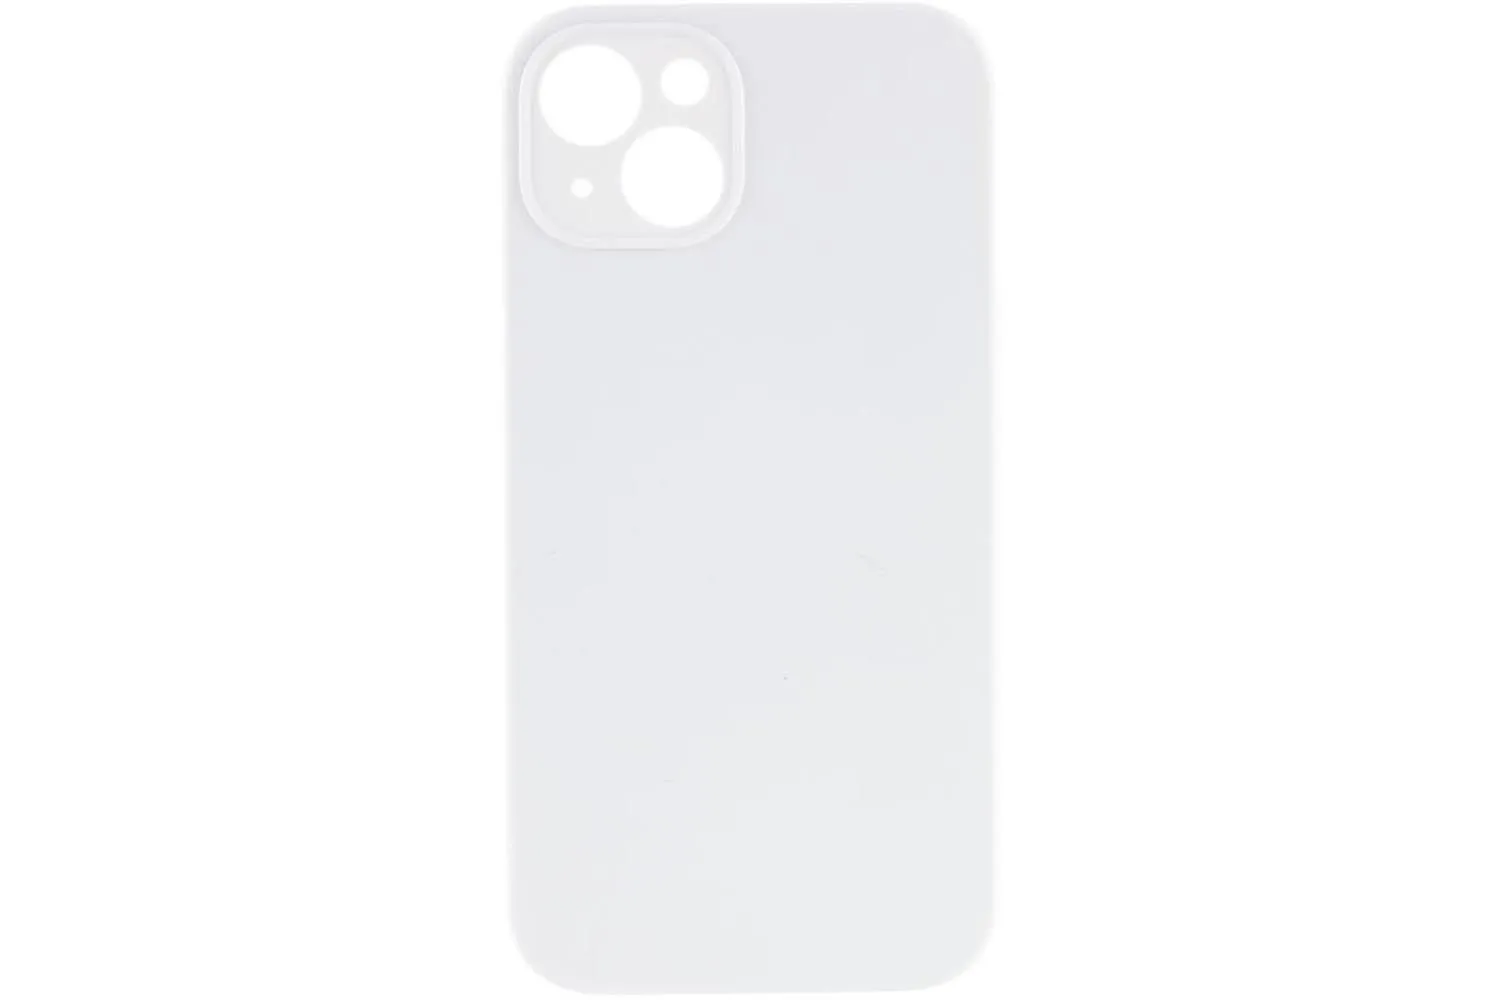 Чехол силиконовый с защитой камеры для Apple iPhone 14, iPhone 13 (белый)